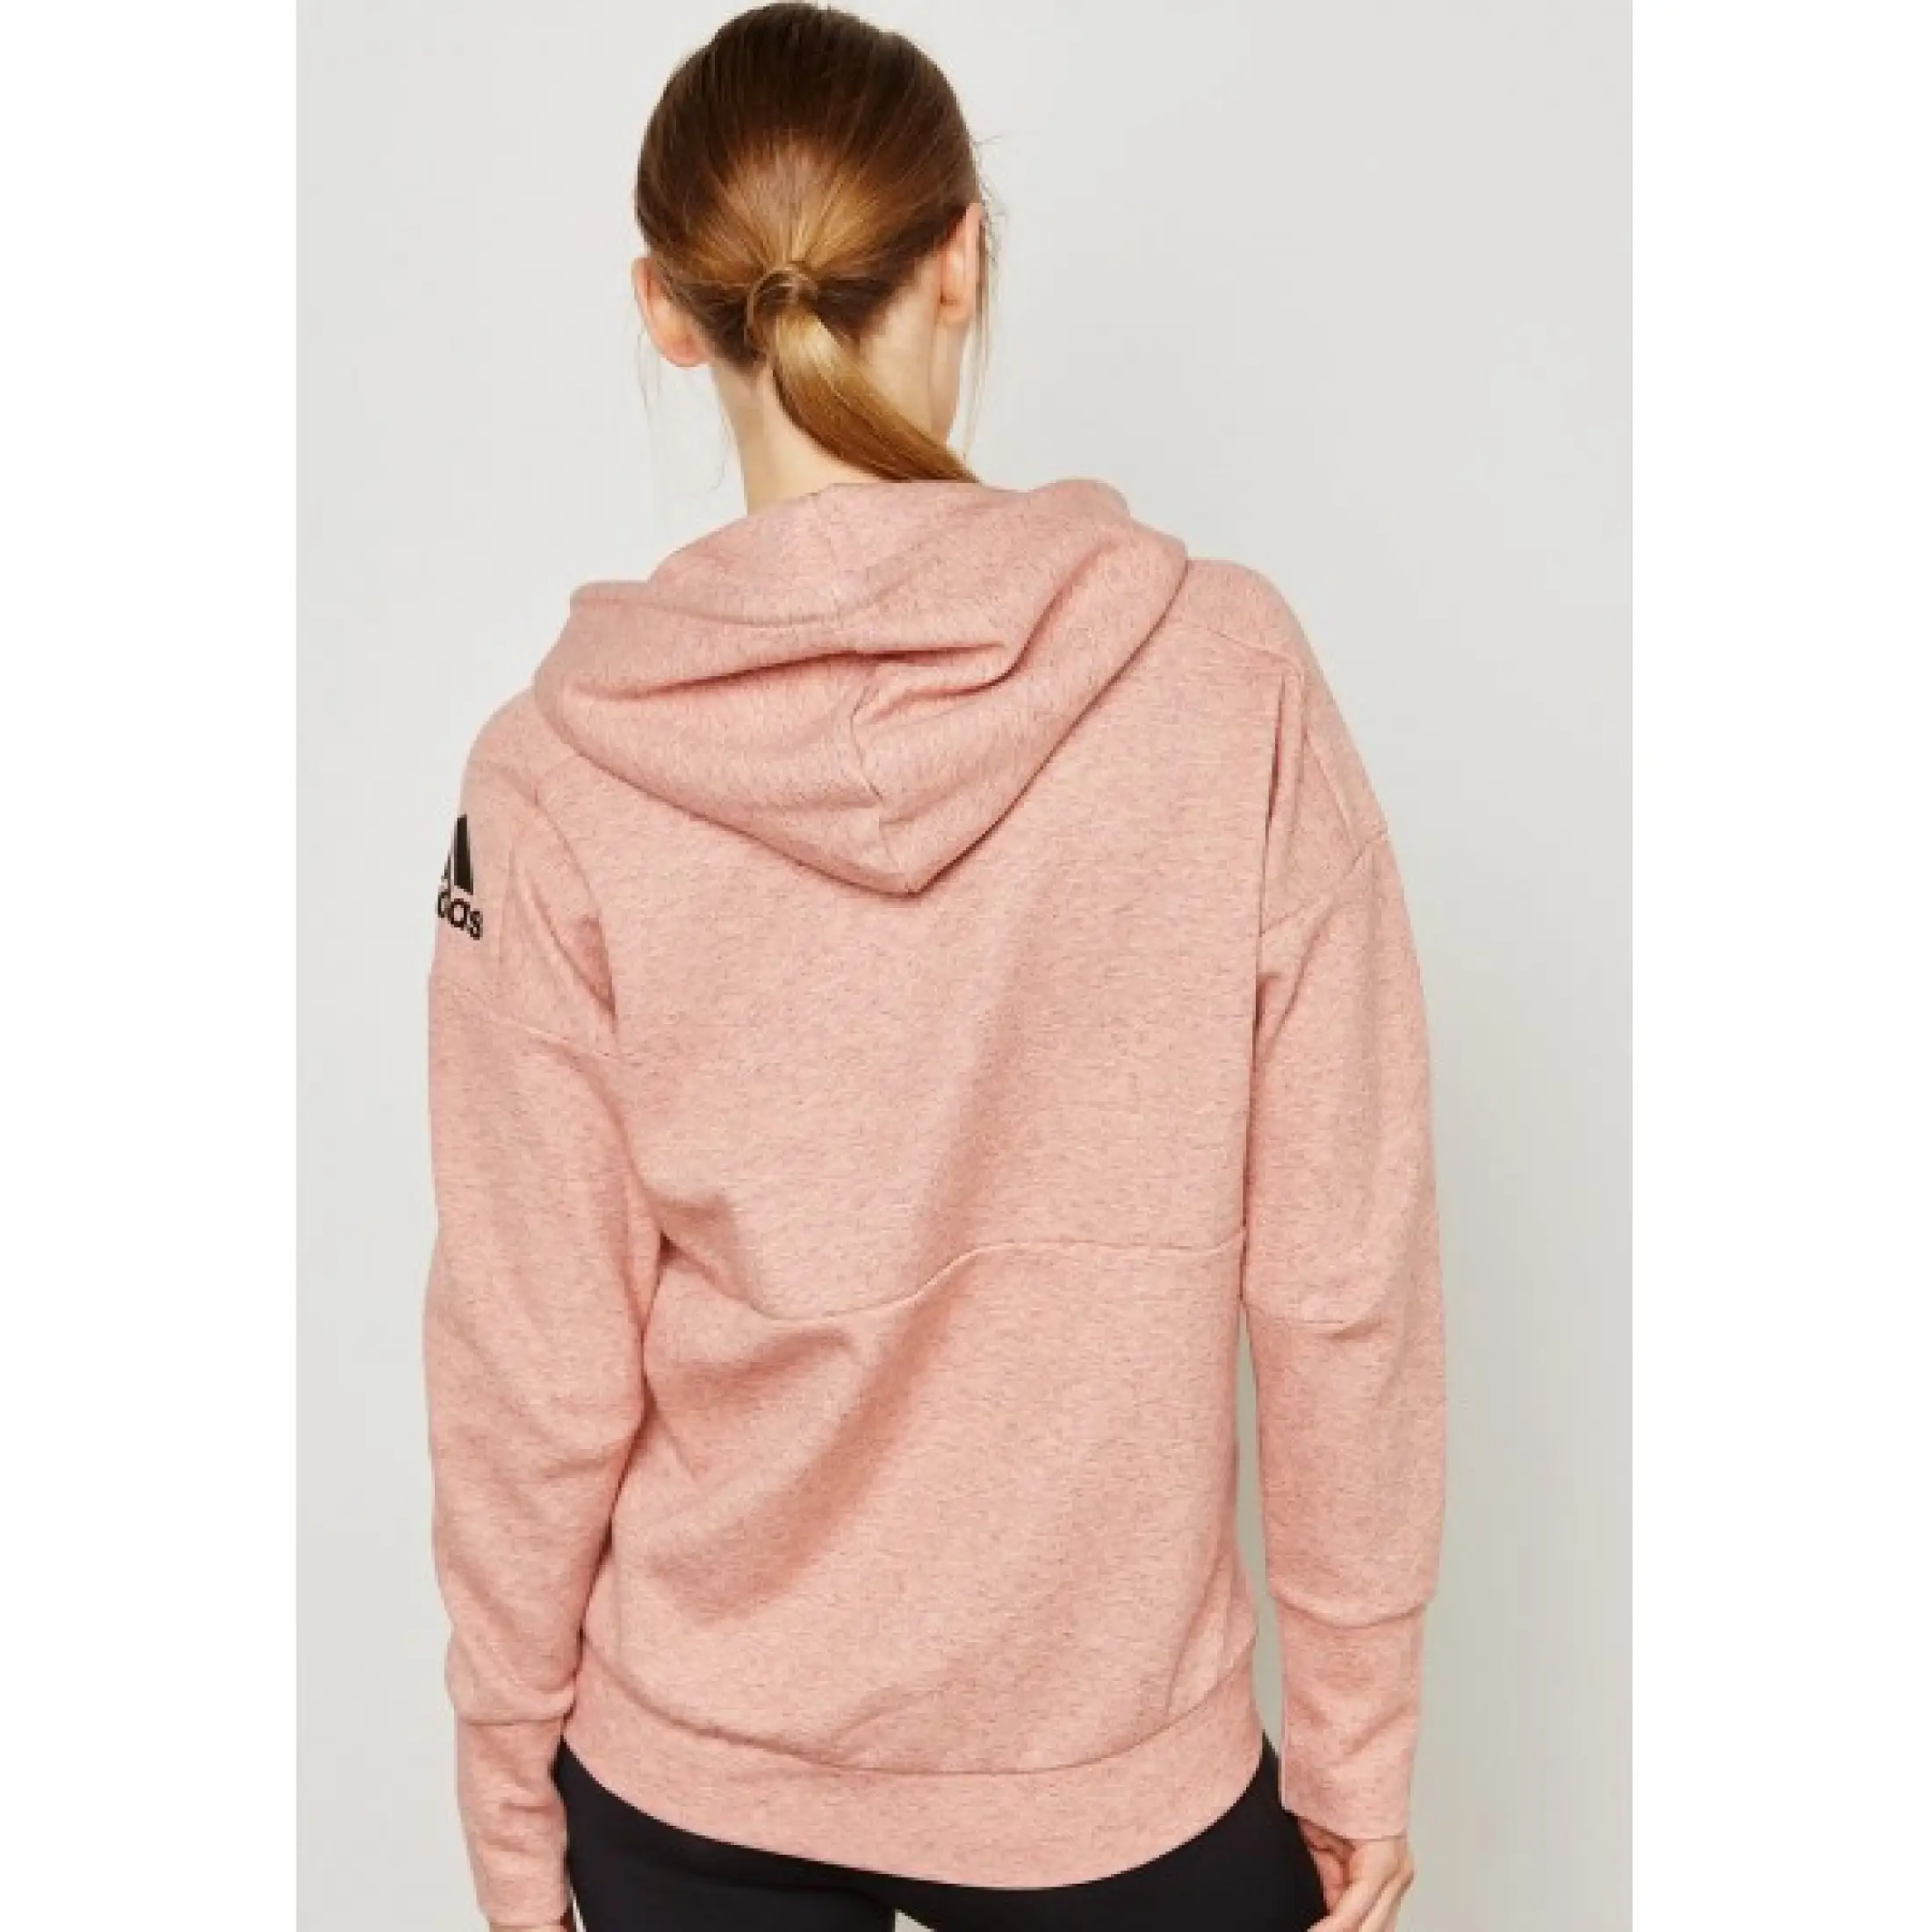 pink adidas womens hoodie